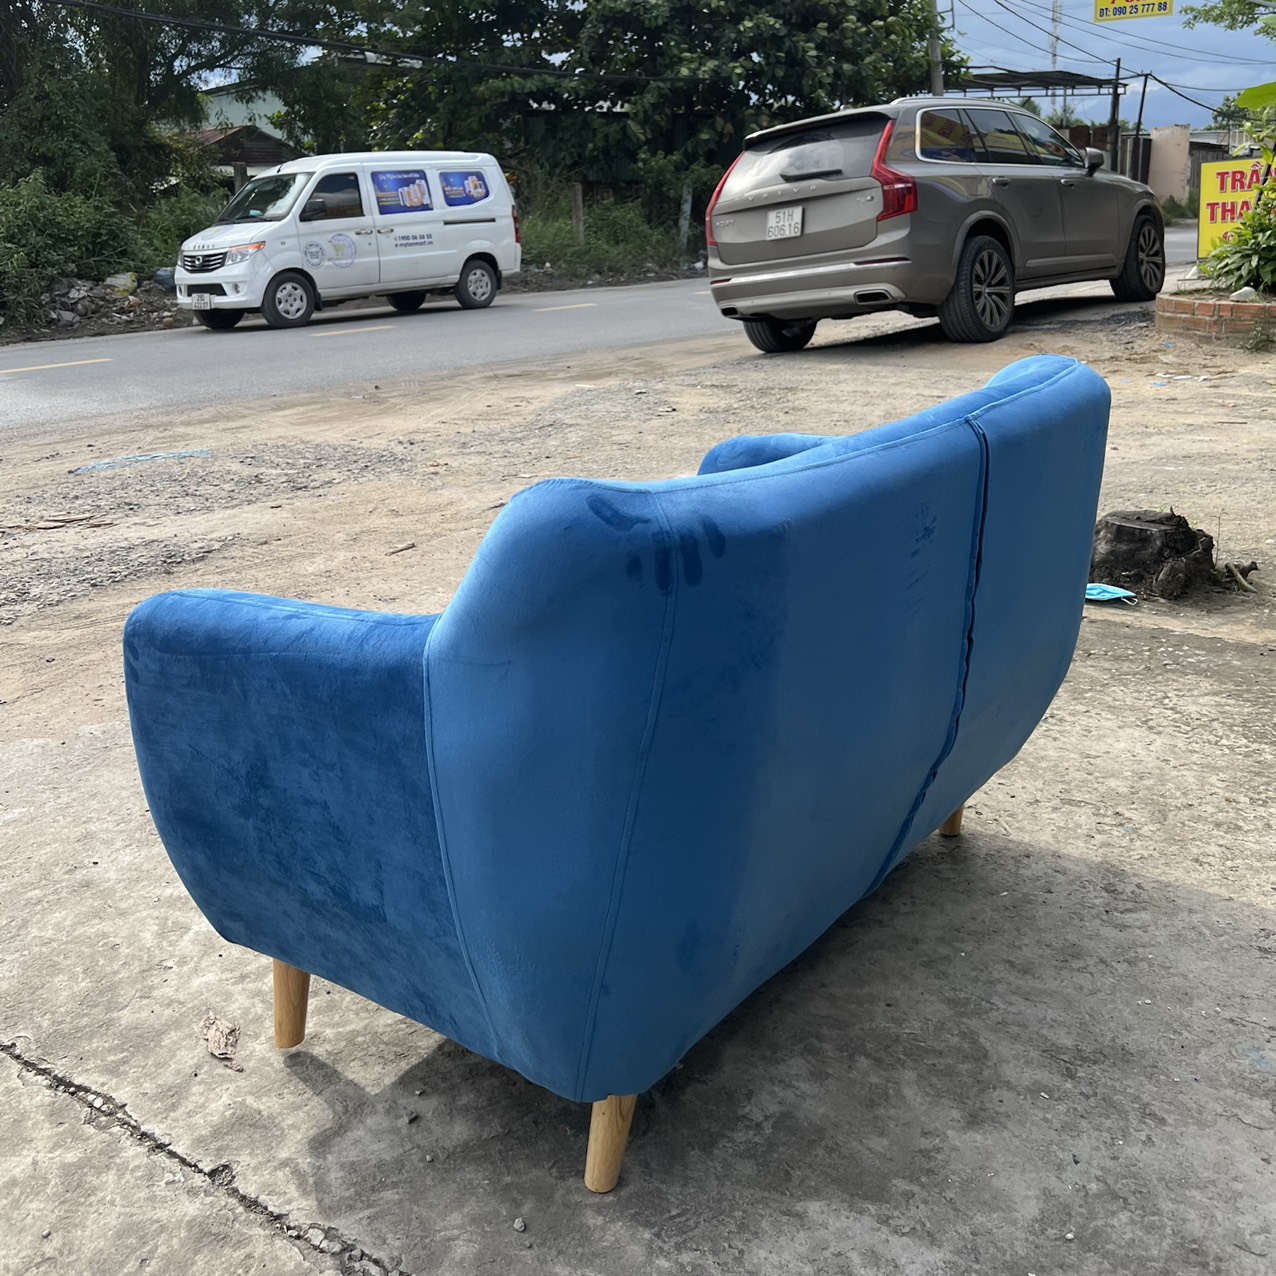 Sofa băng xanh nhung giá rẻ - SFB01